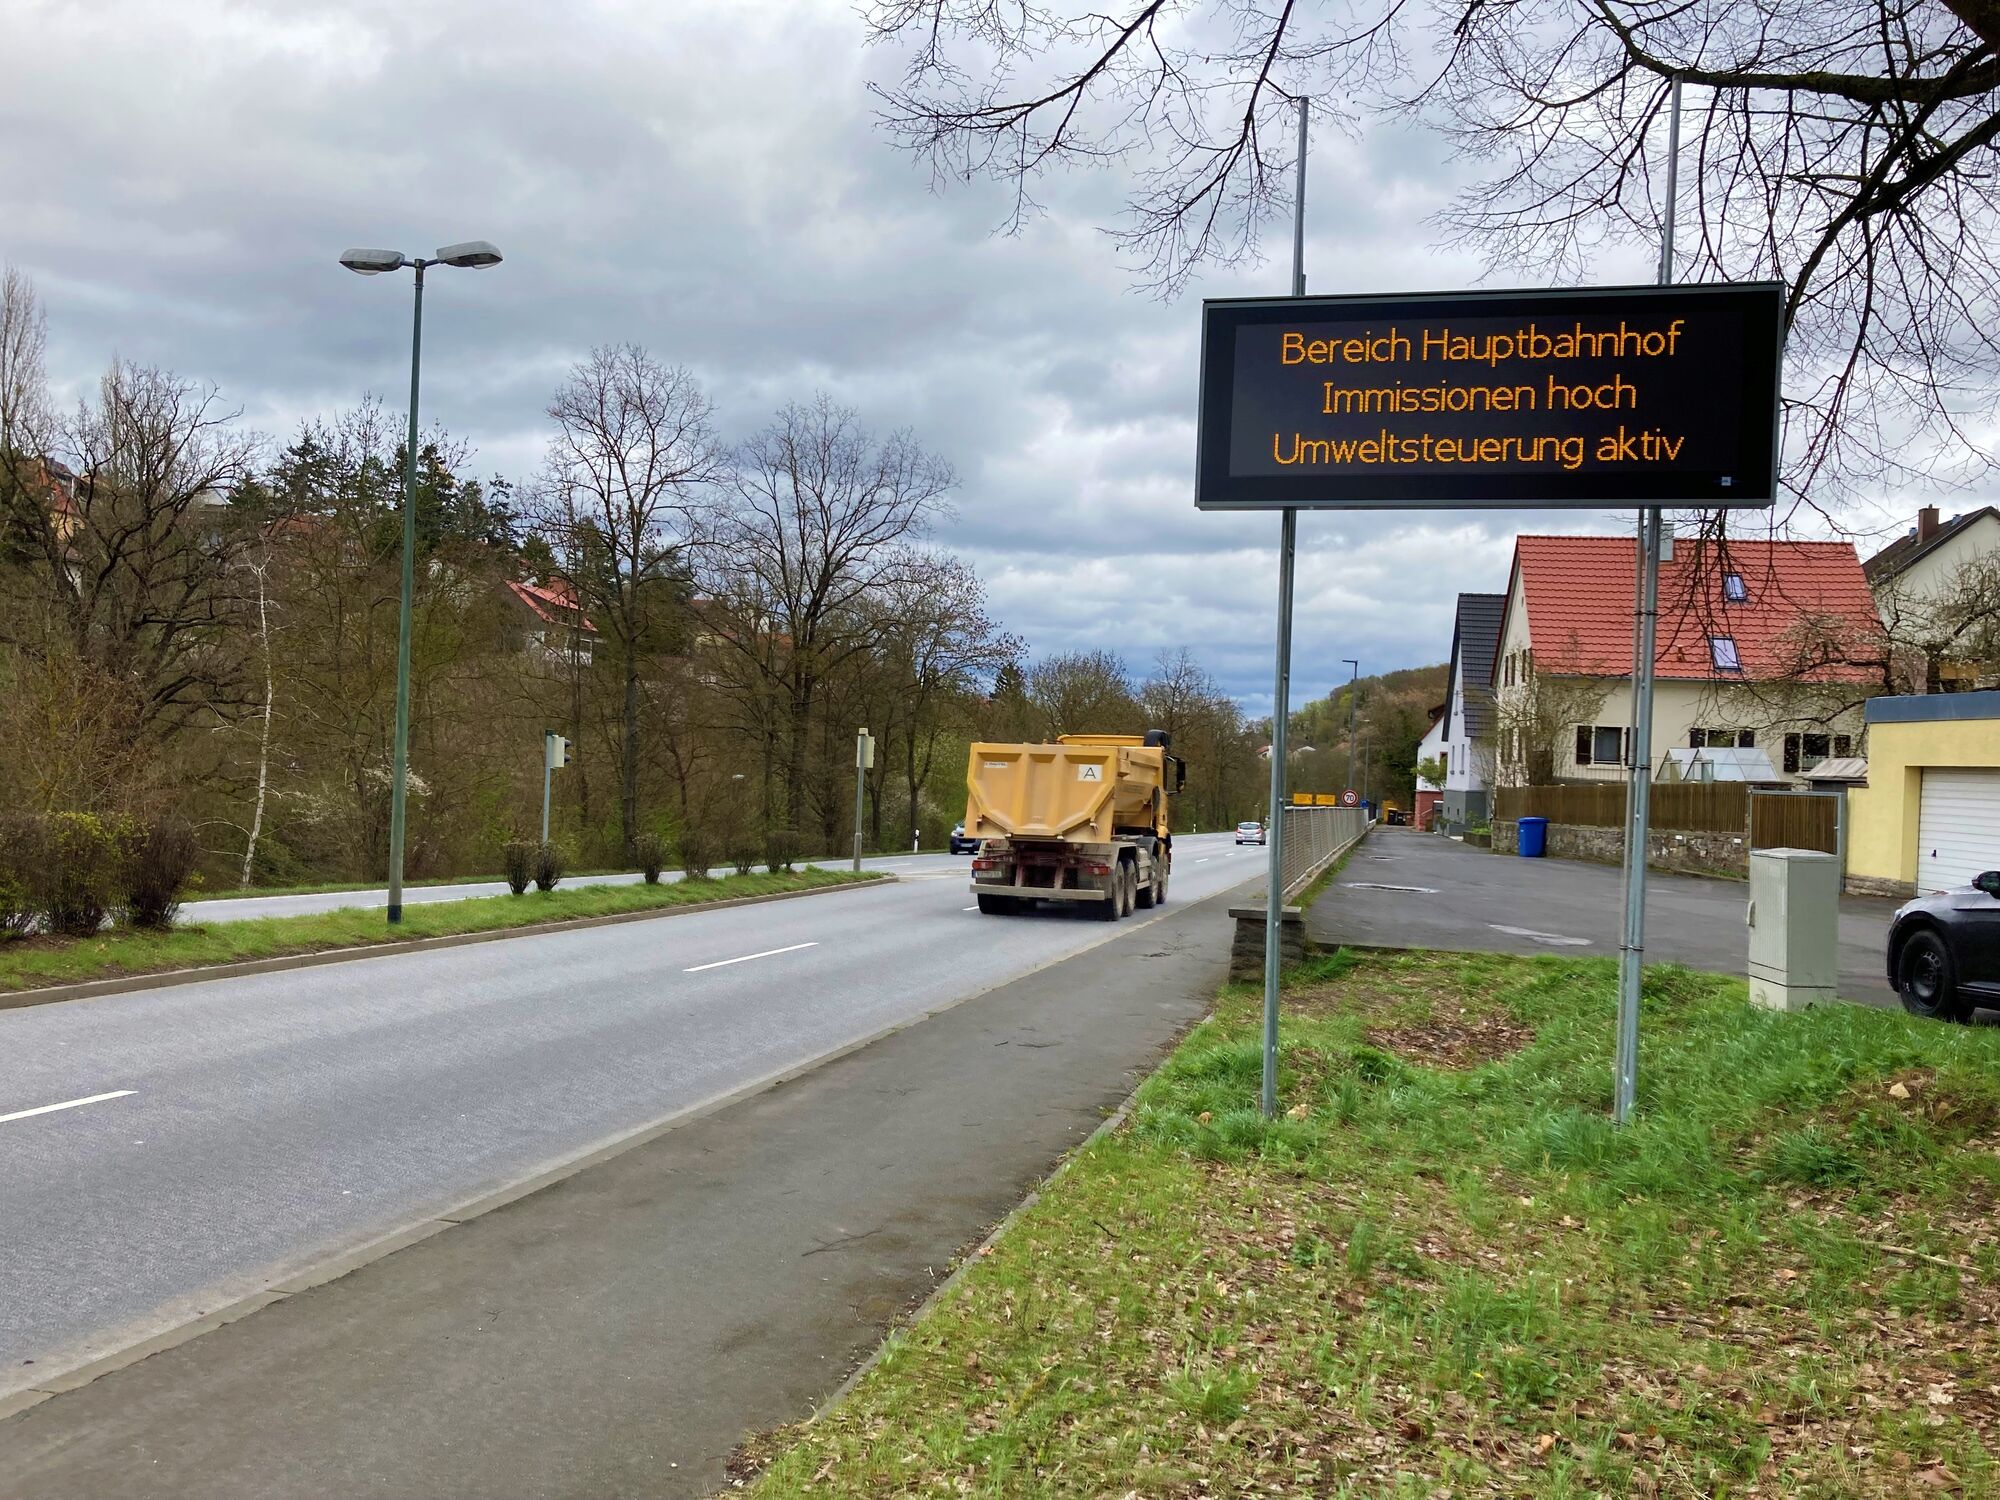 Hinweis auf eine aktive Umweltsteuerung auf der LED-Tafel in Höchberg (c) Baureferat, Stadt Würzburg